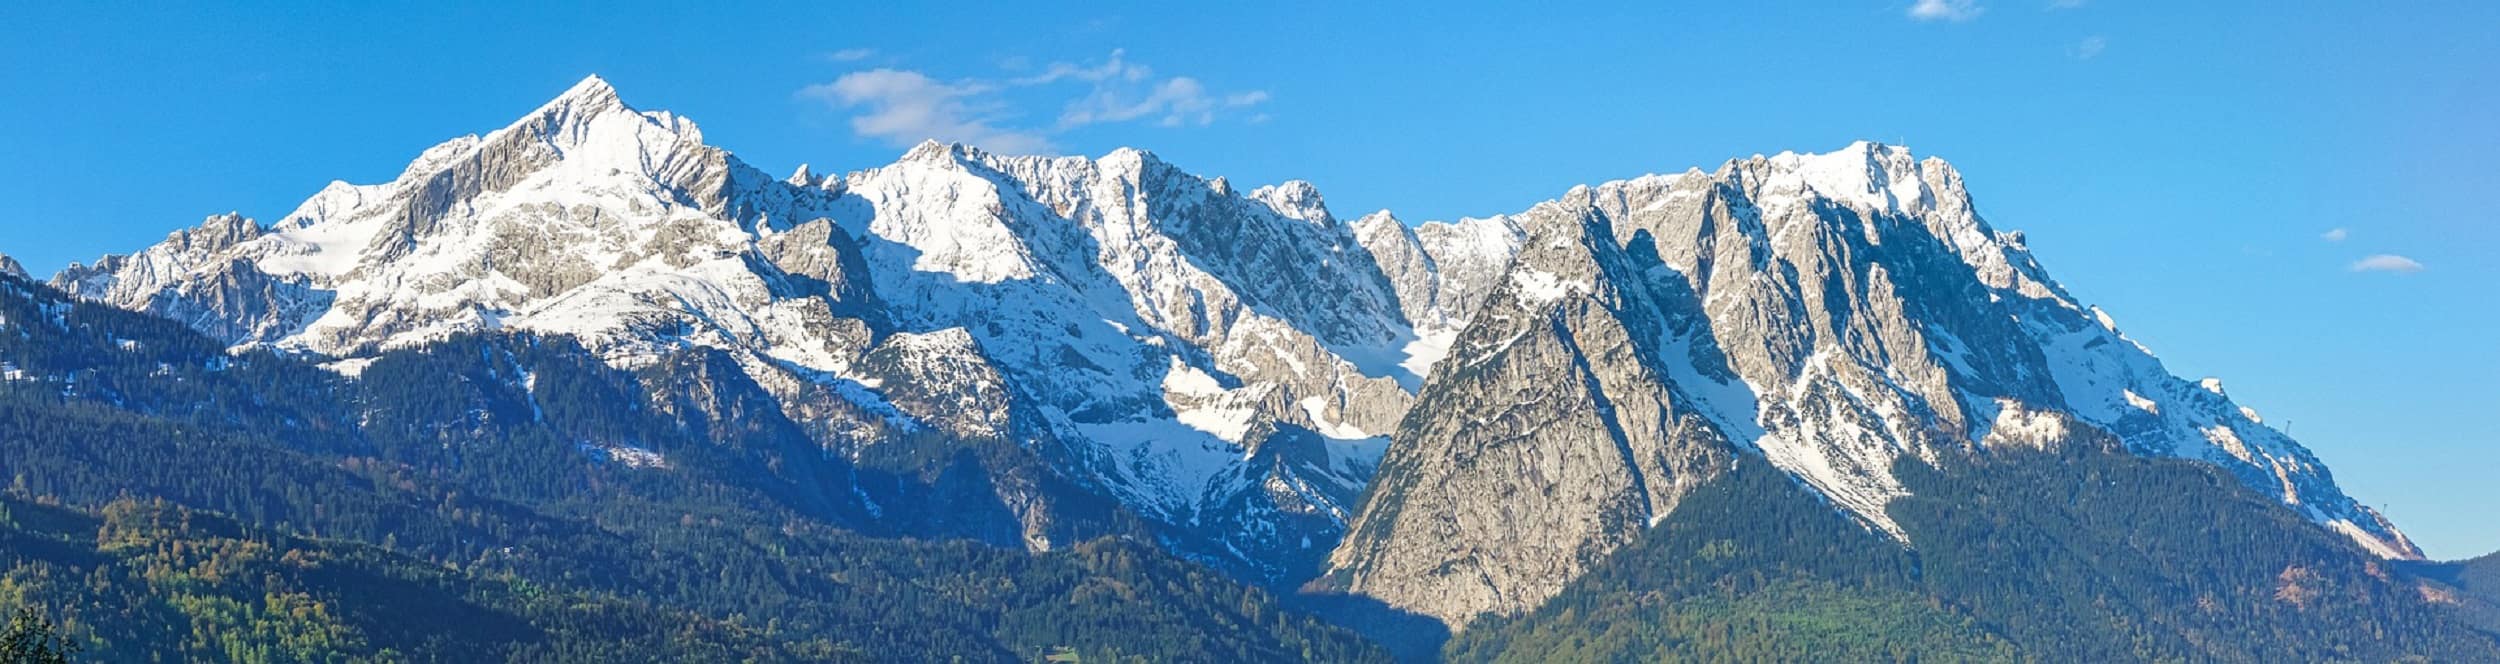 Ferienwohnung in Garmisch – viel mehr als nur ein Wintertraum